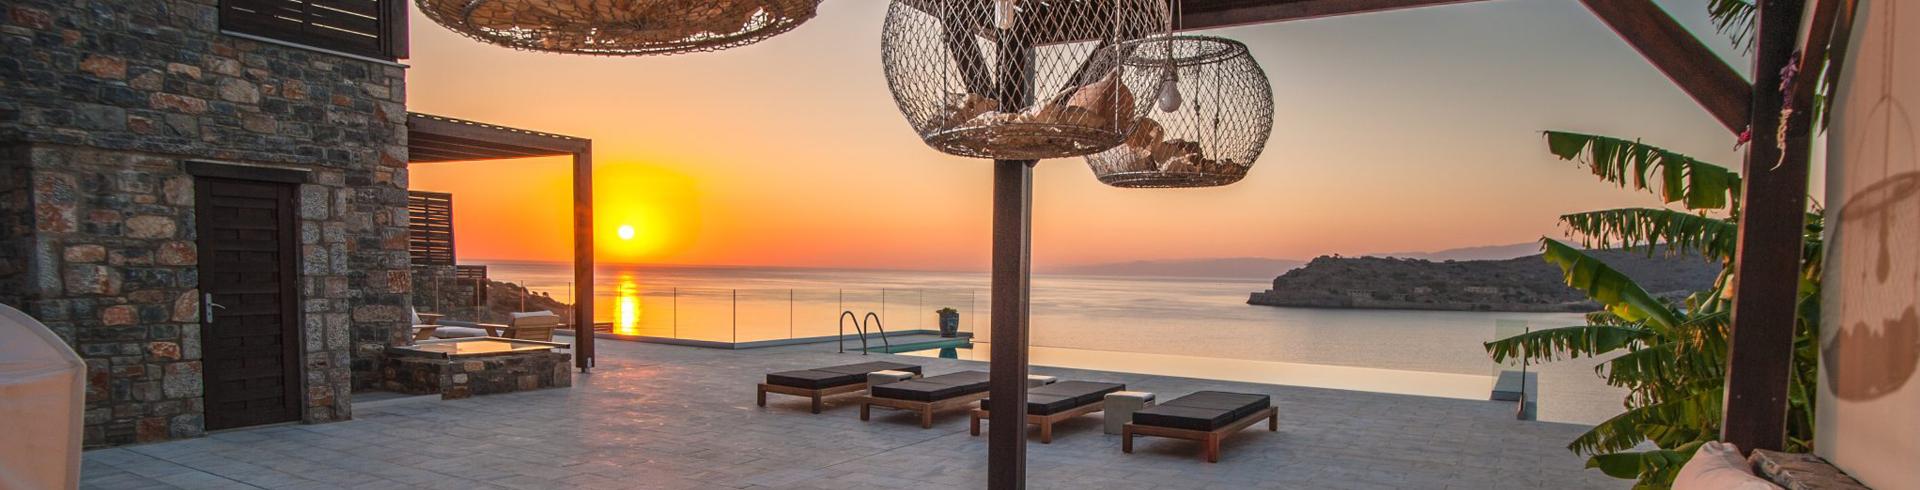 Kreta Luxusvilla Ferienhaus mit Pool und Meerblick